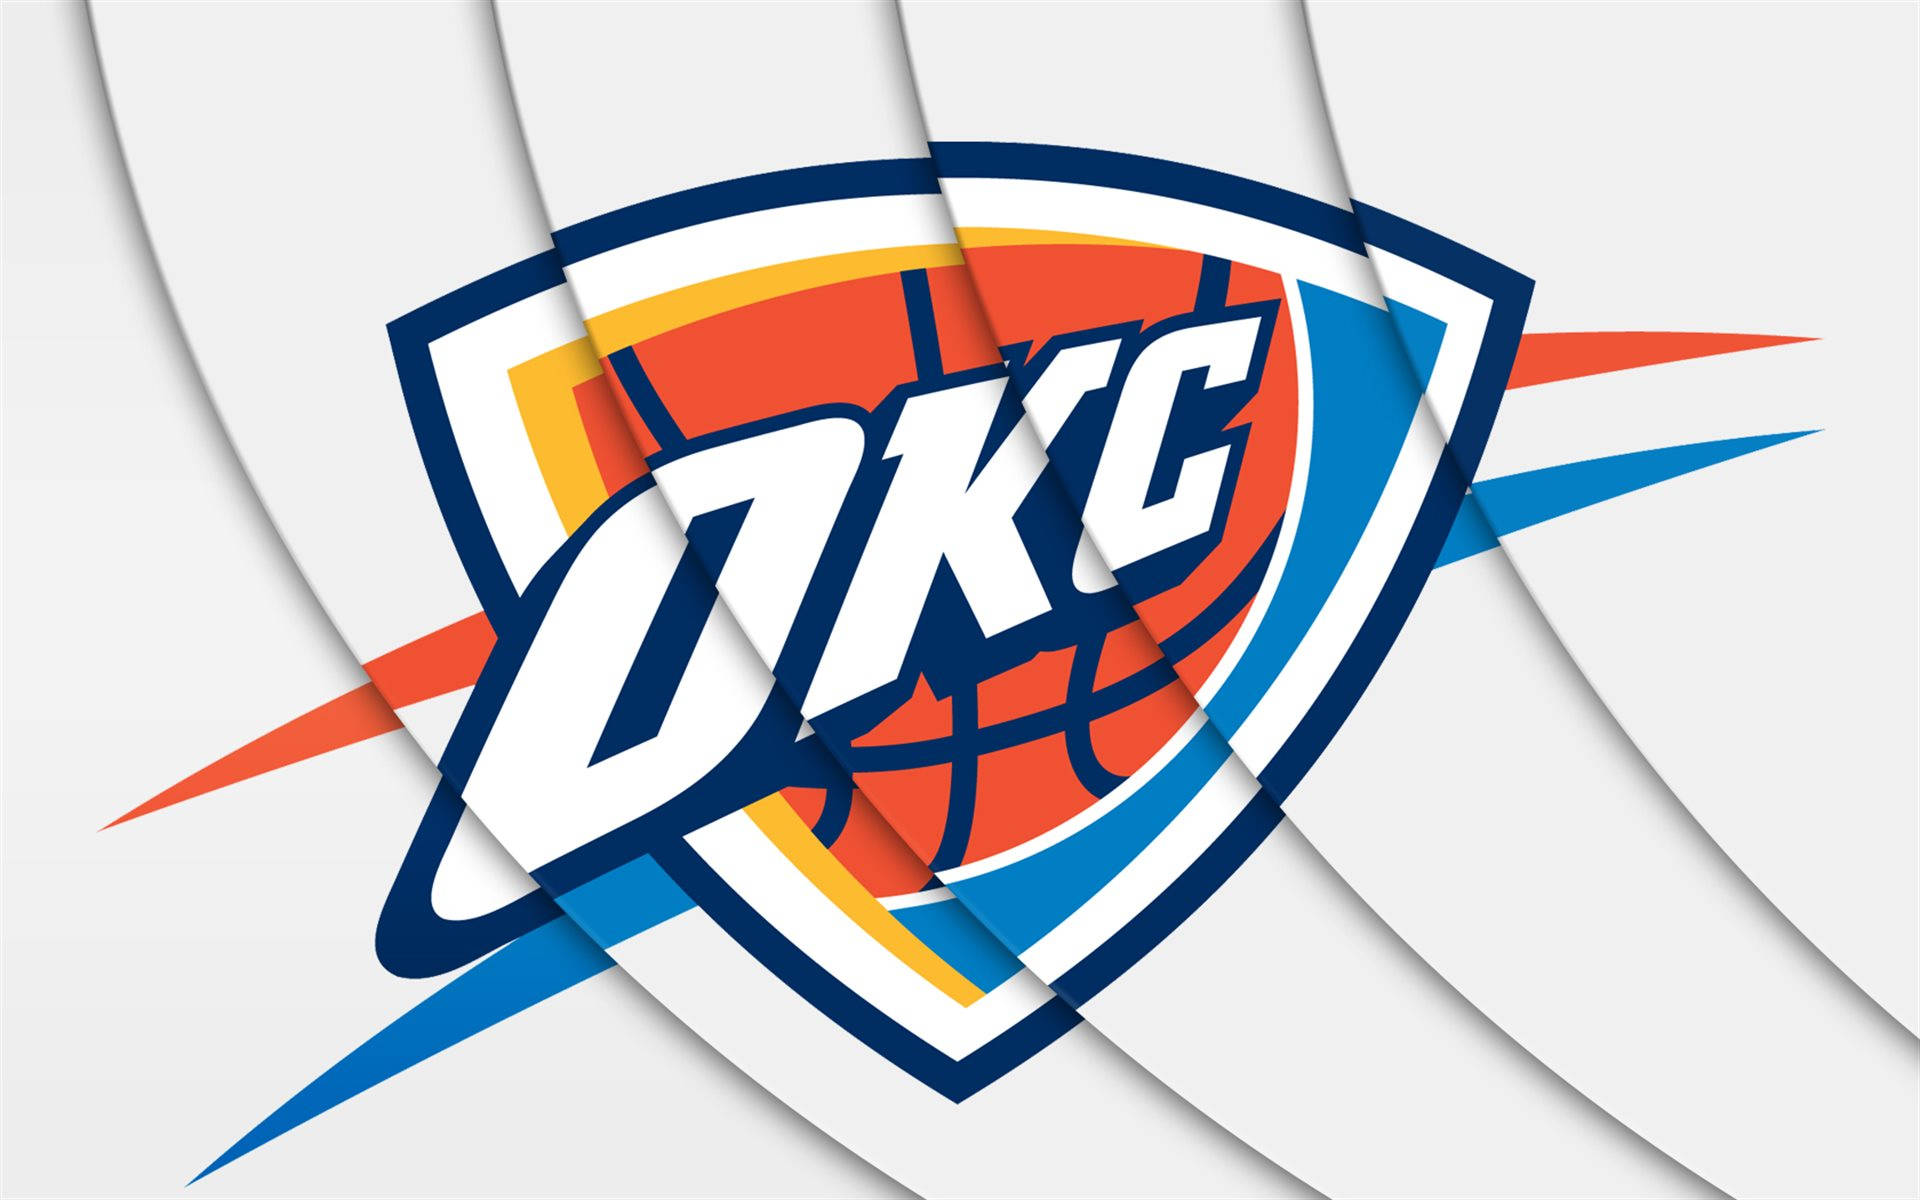 Logotipodel Oklahoma City Thunder Con Fondo Blanco. Fondo de pantalla